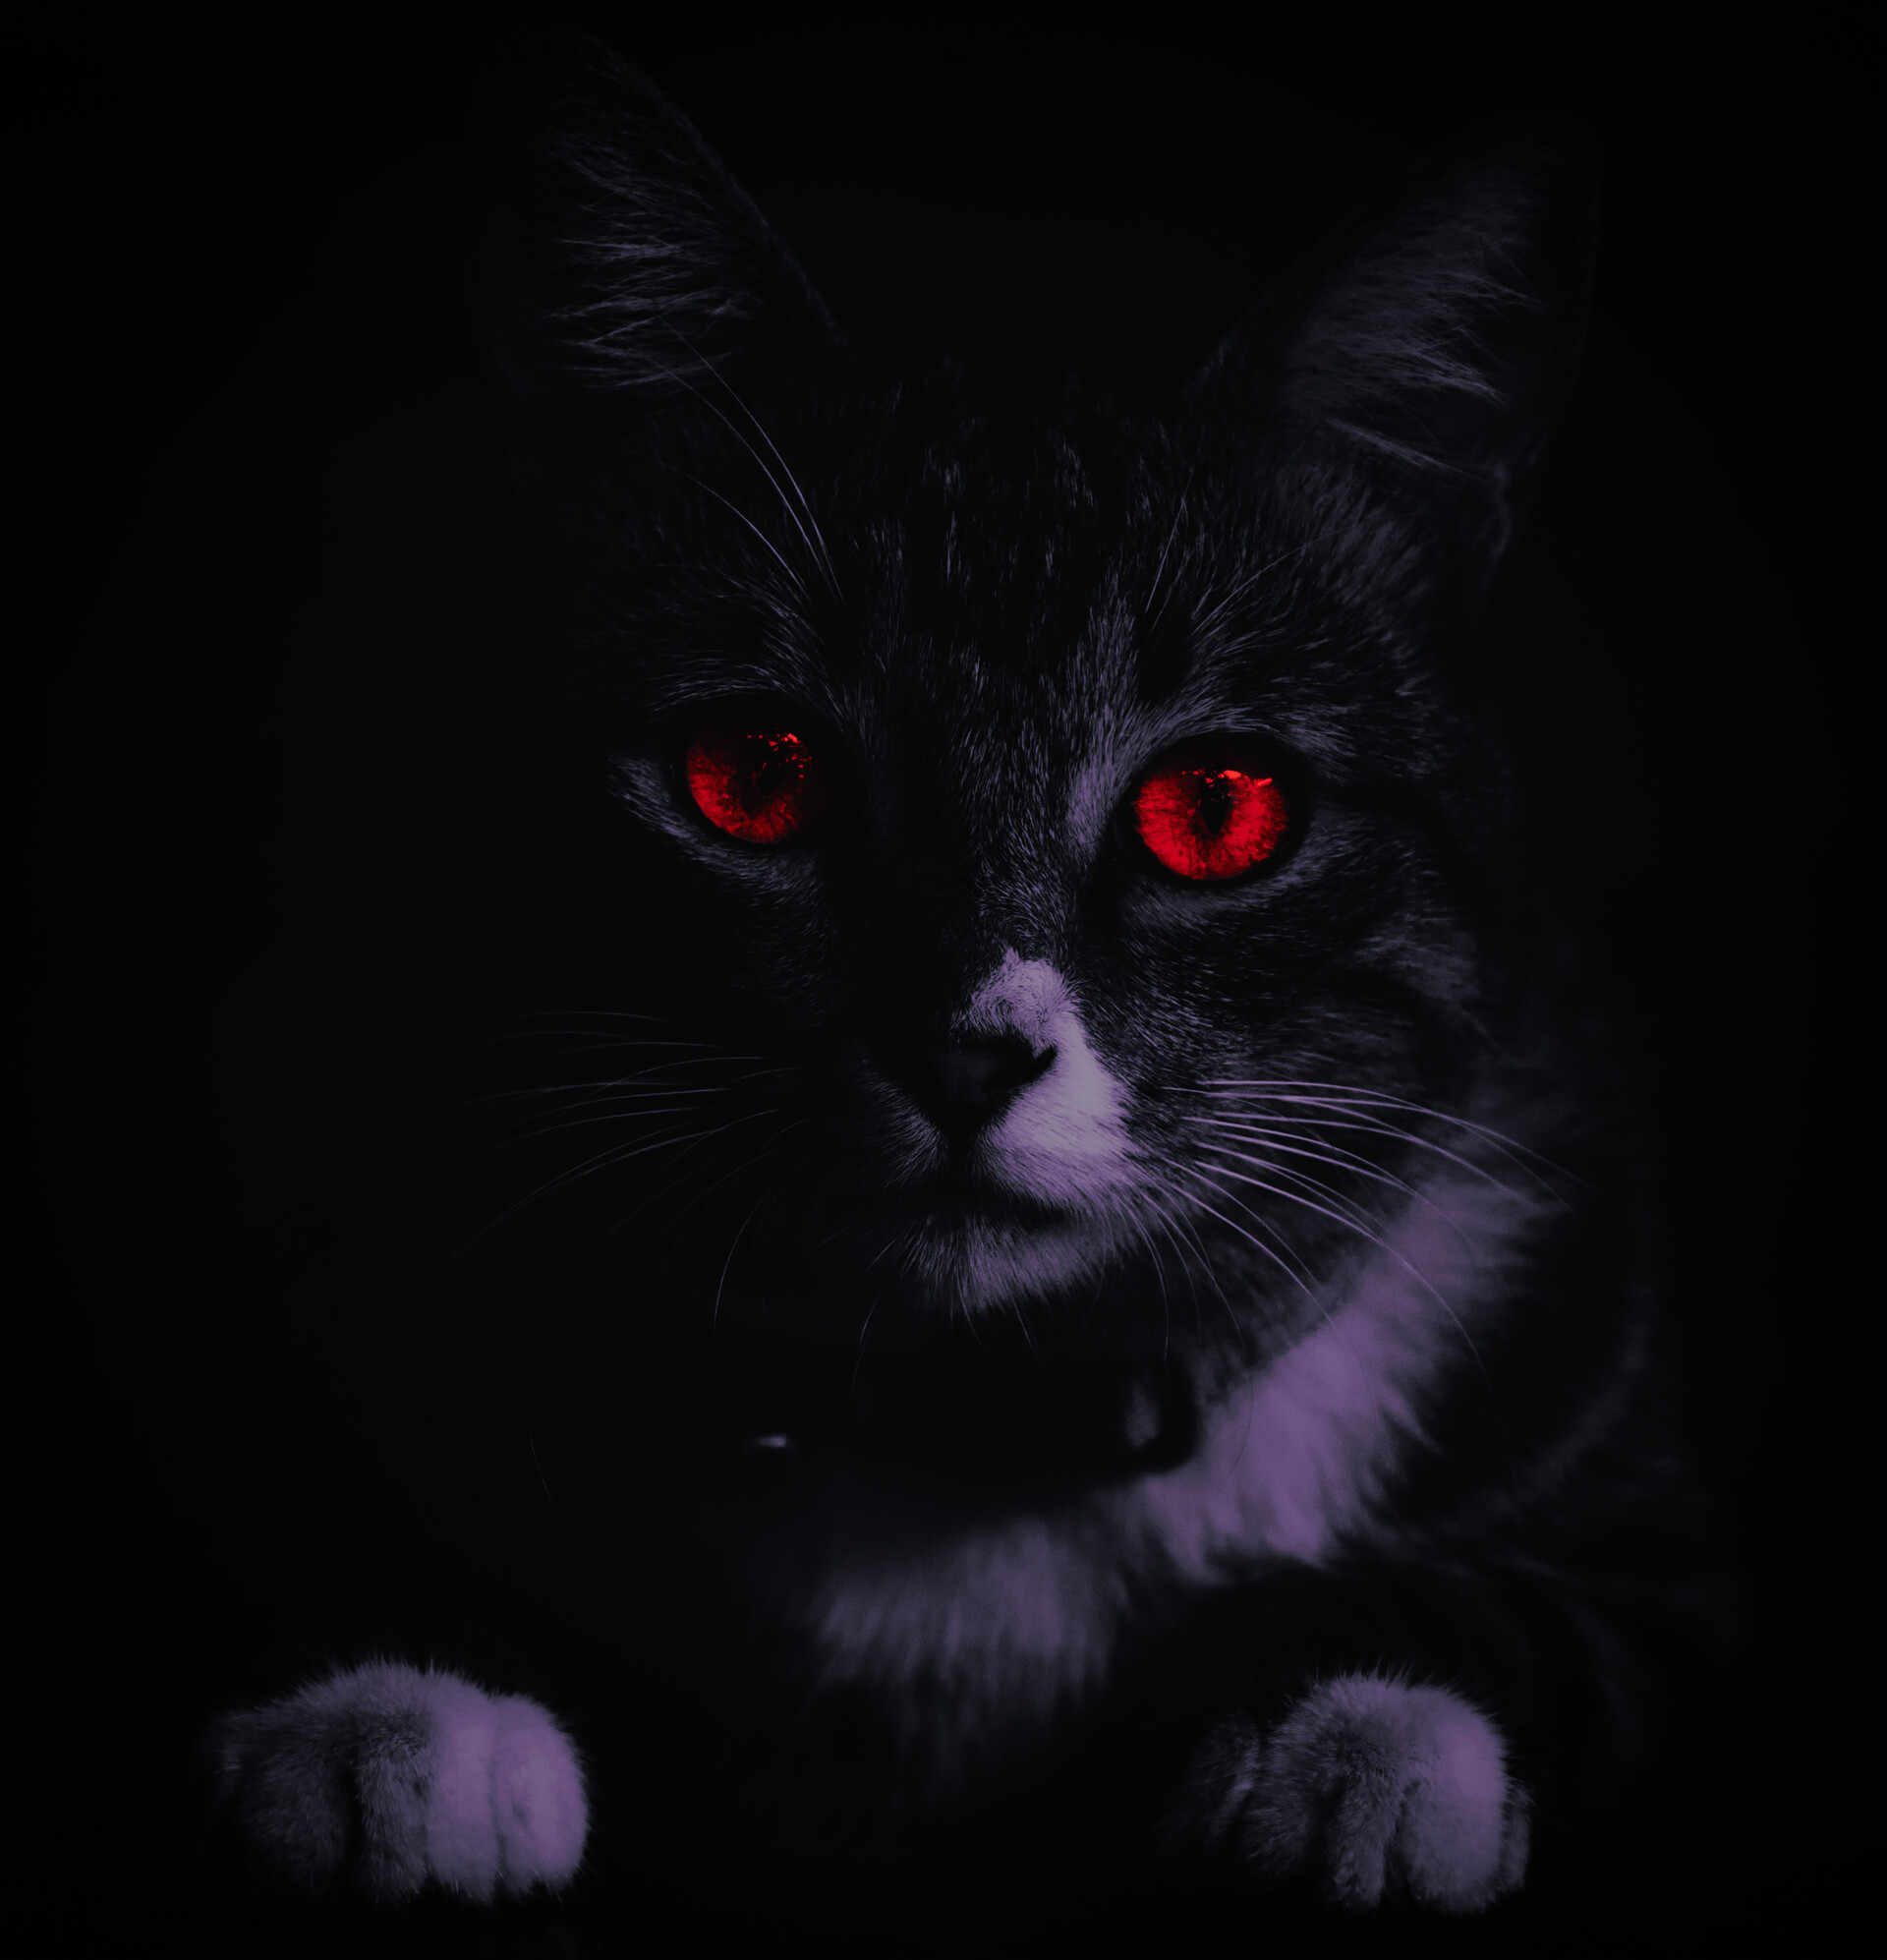 Chân dung động vật: Mắt đỏ trên nền đen. Nếu bạn đang tìm kiếm một bức chân dung động vật đầy màu sắc và bí ẩn, hãy xem bức ảnh này với một đường nét sống động của đôi mắt đỏ rực và nền đen ấm áp.